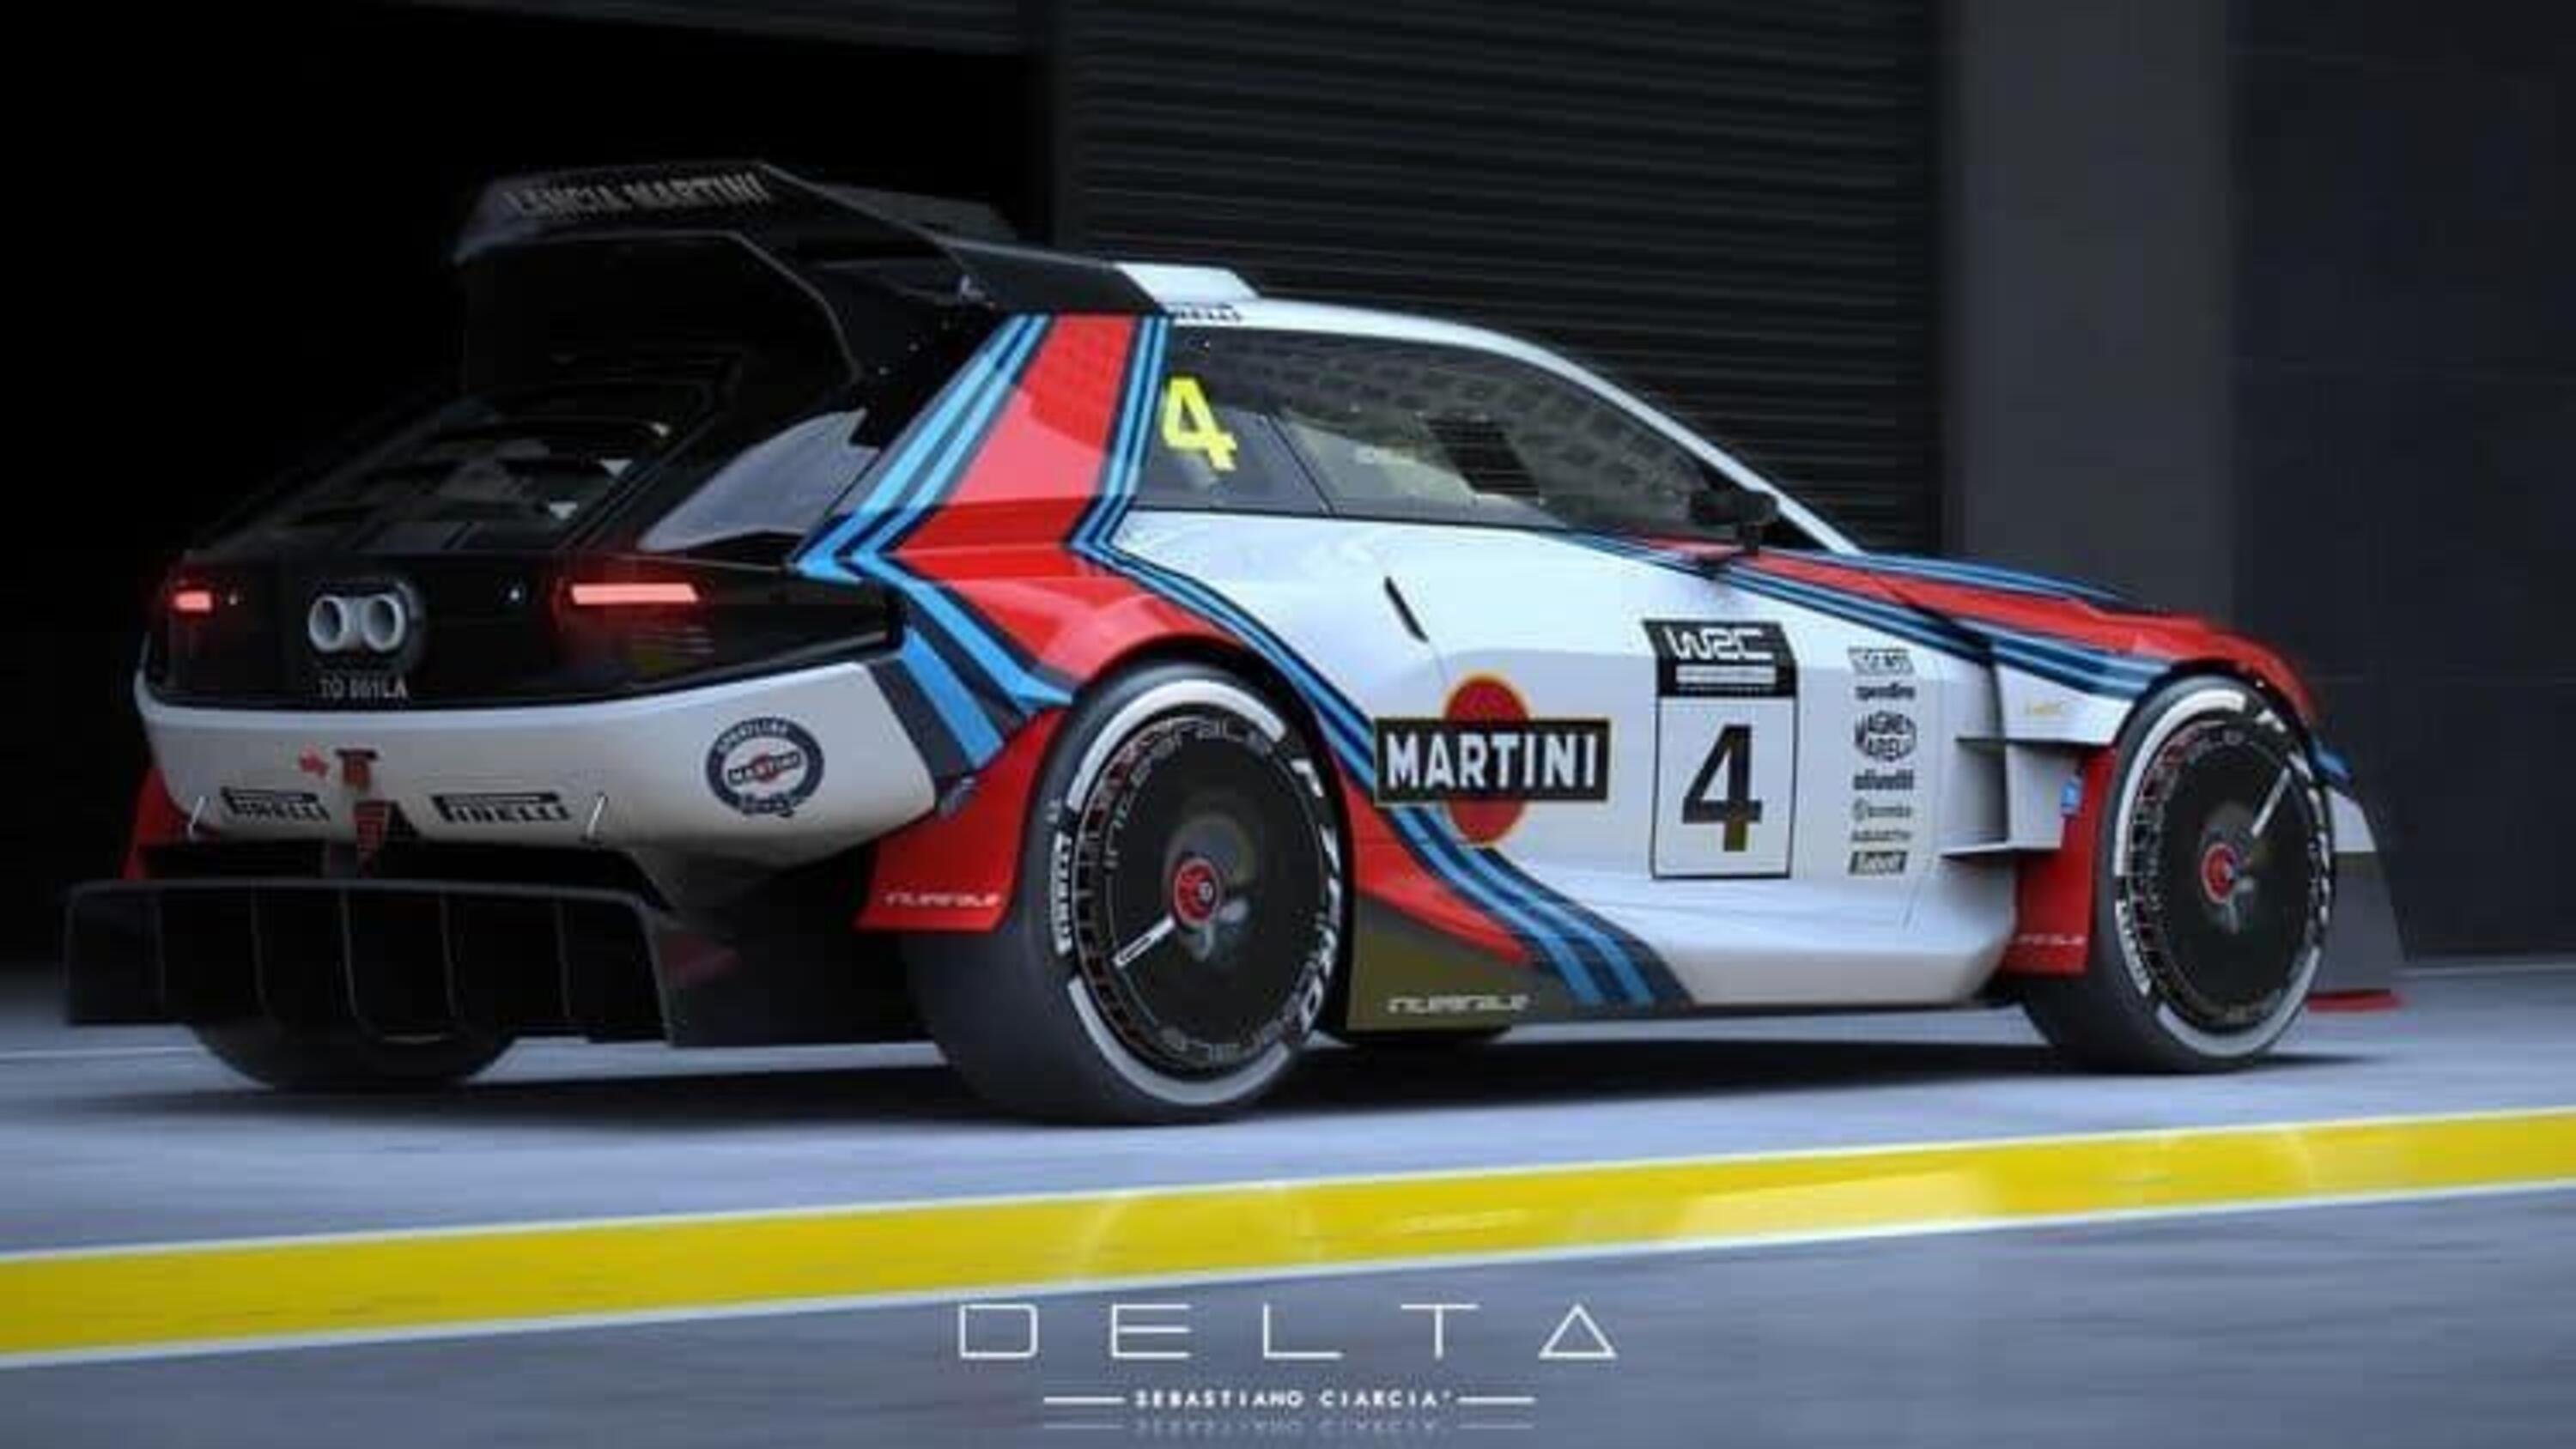 Ecco come potrebbe essere la nuova Delta S4 in livrea Martini [RENDER] 